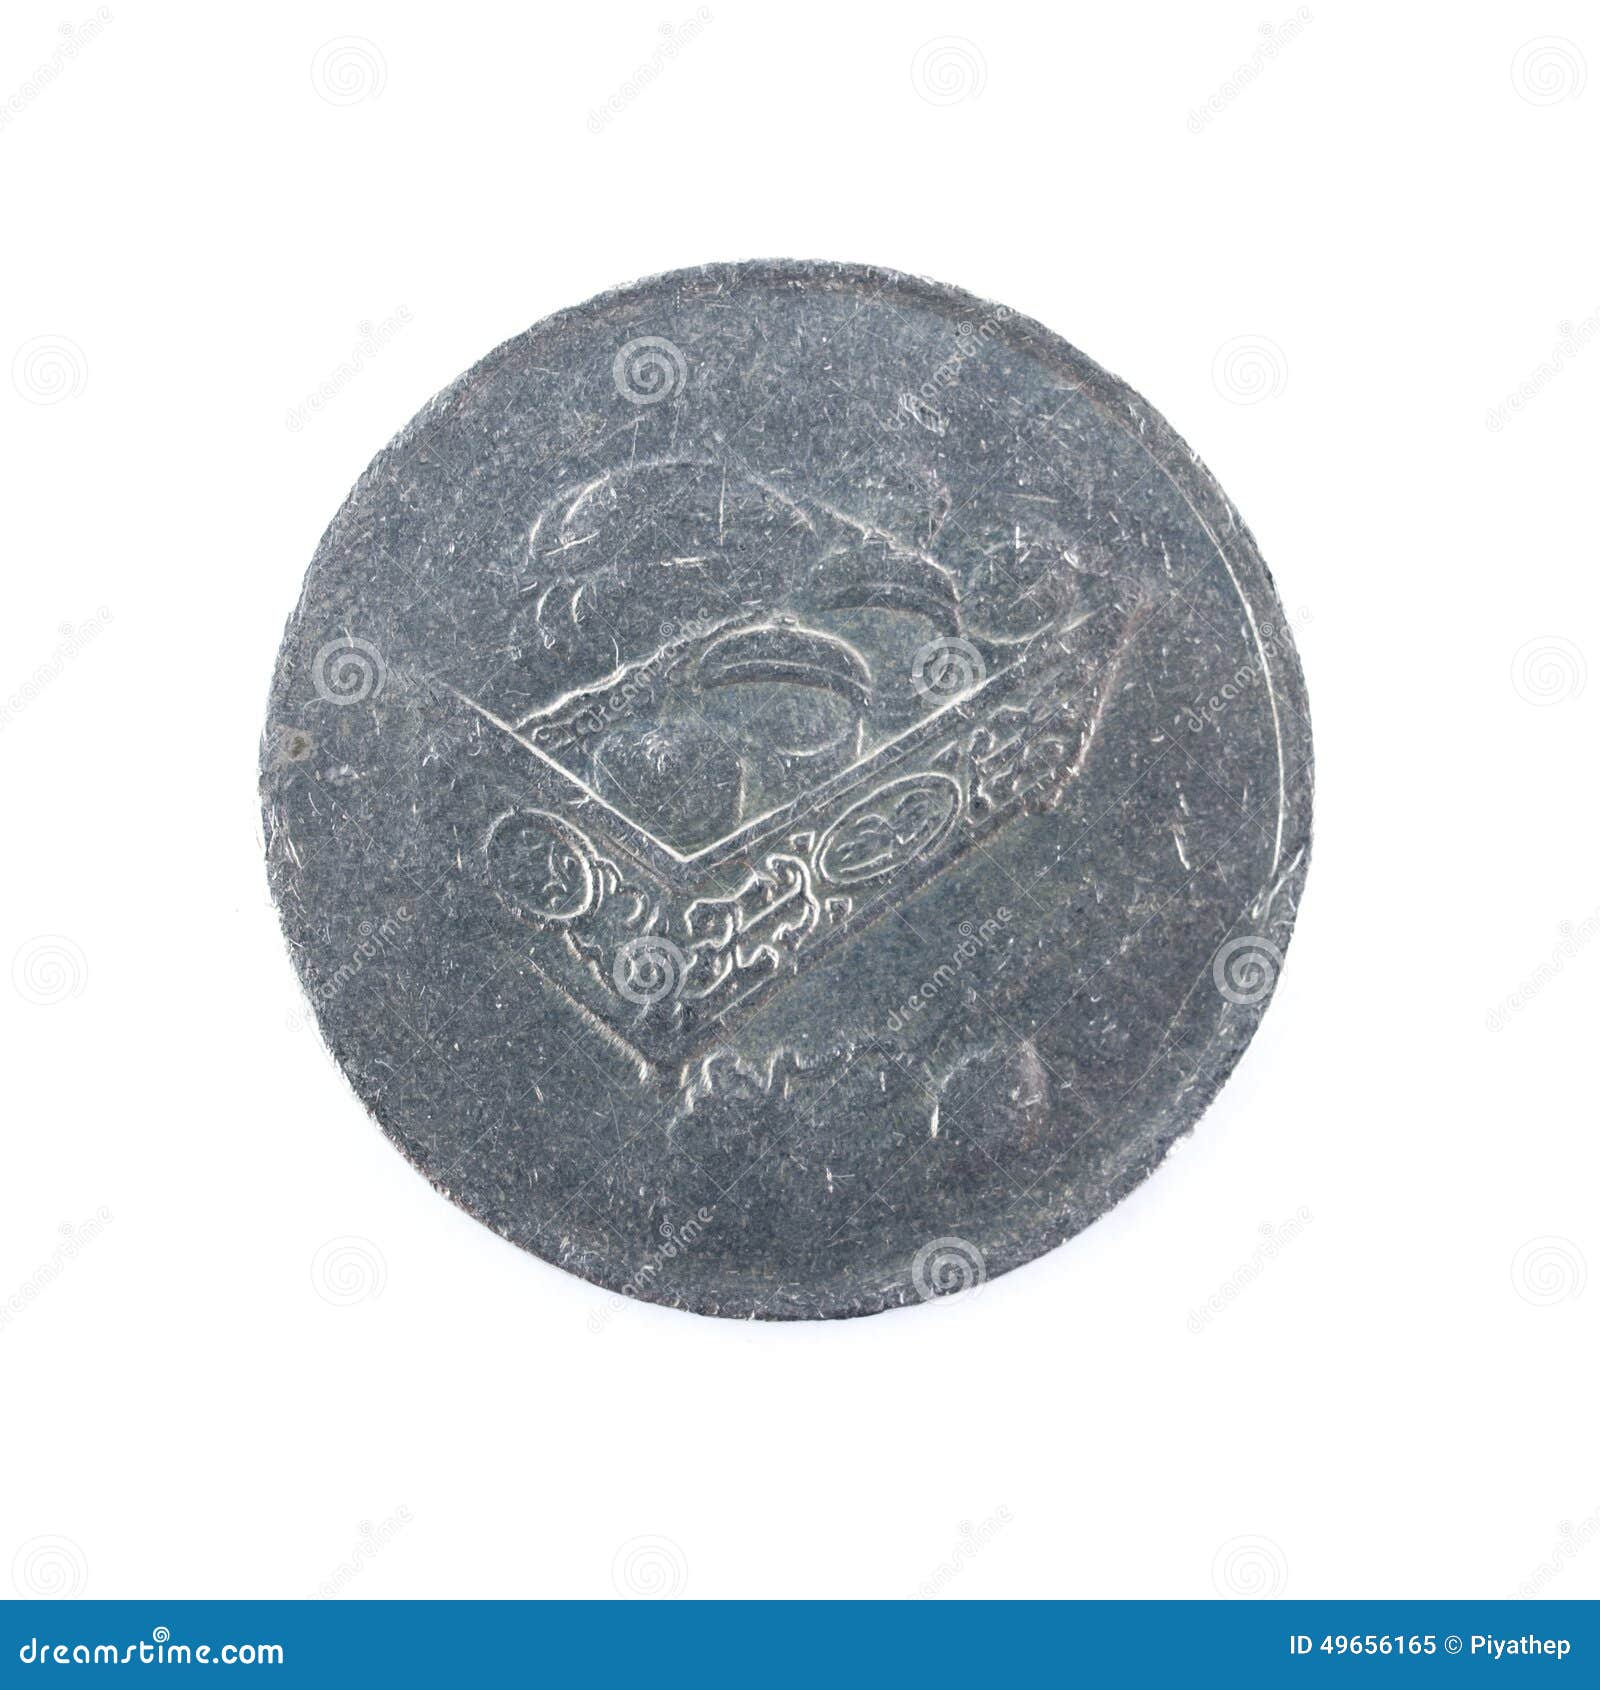 马来西亚的硬币 库存照片. 图片 包括有 现金, 宏指令, 对象, 硬币, 马来西亚, 设置, 充分, 林吉特 - 45647024